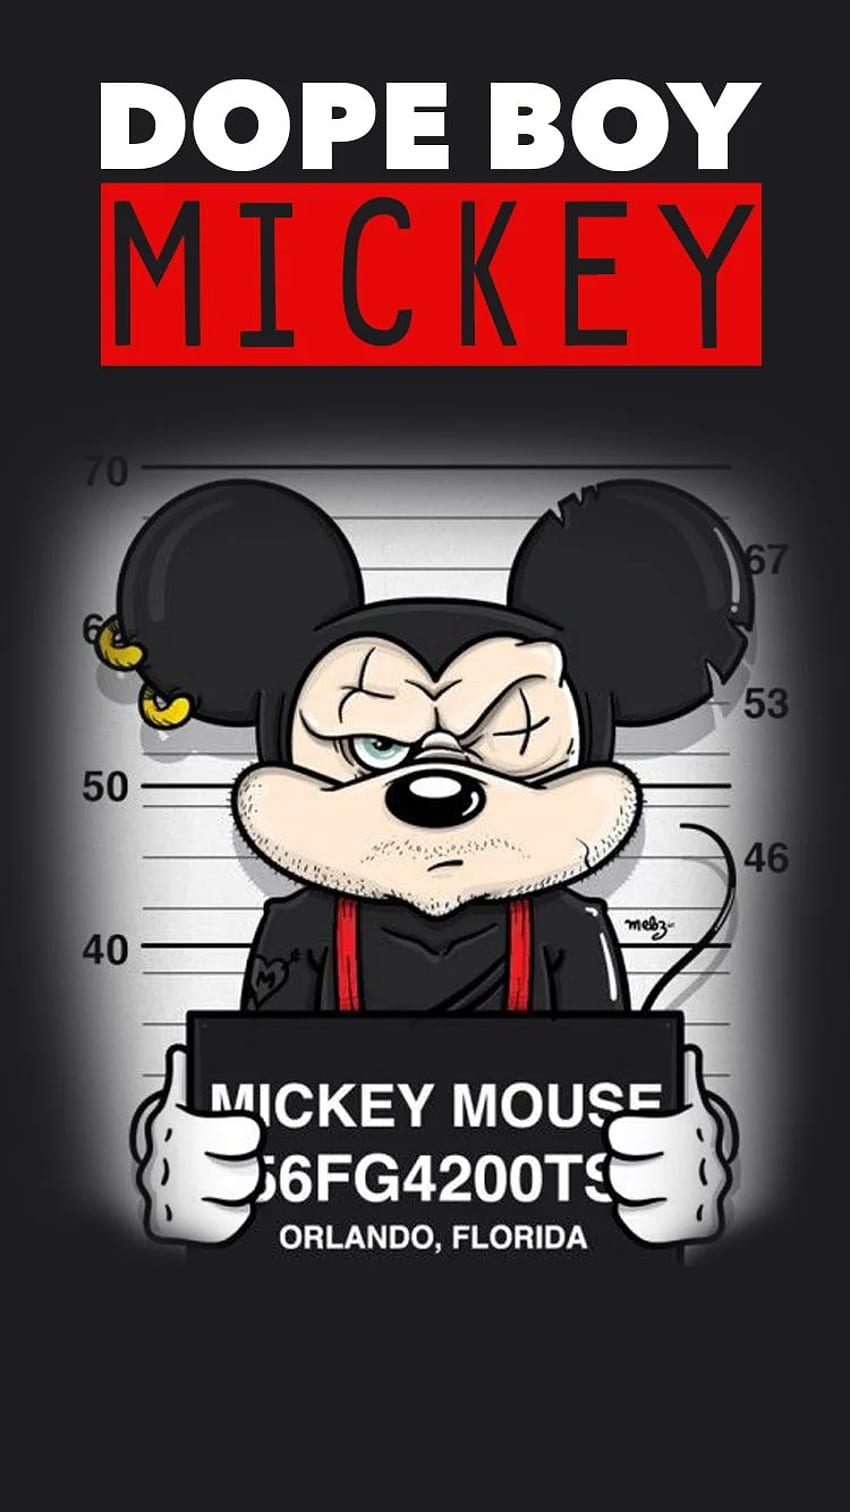 注目の Tech Me Out []、モバイル、タブレット向け。 ミッキー マウス シュプリームをご覧ください。 シュプリーム ミッキー マウス , ミッキー マウス シュプリーム , ミッキー マウス, シュプリーム ボーイズ HD電話の壁紙